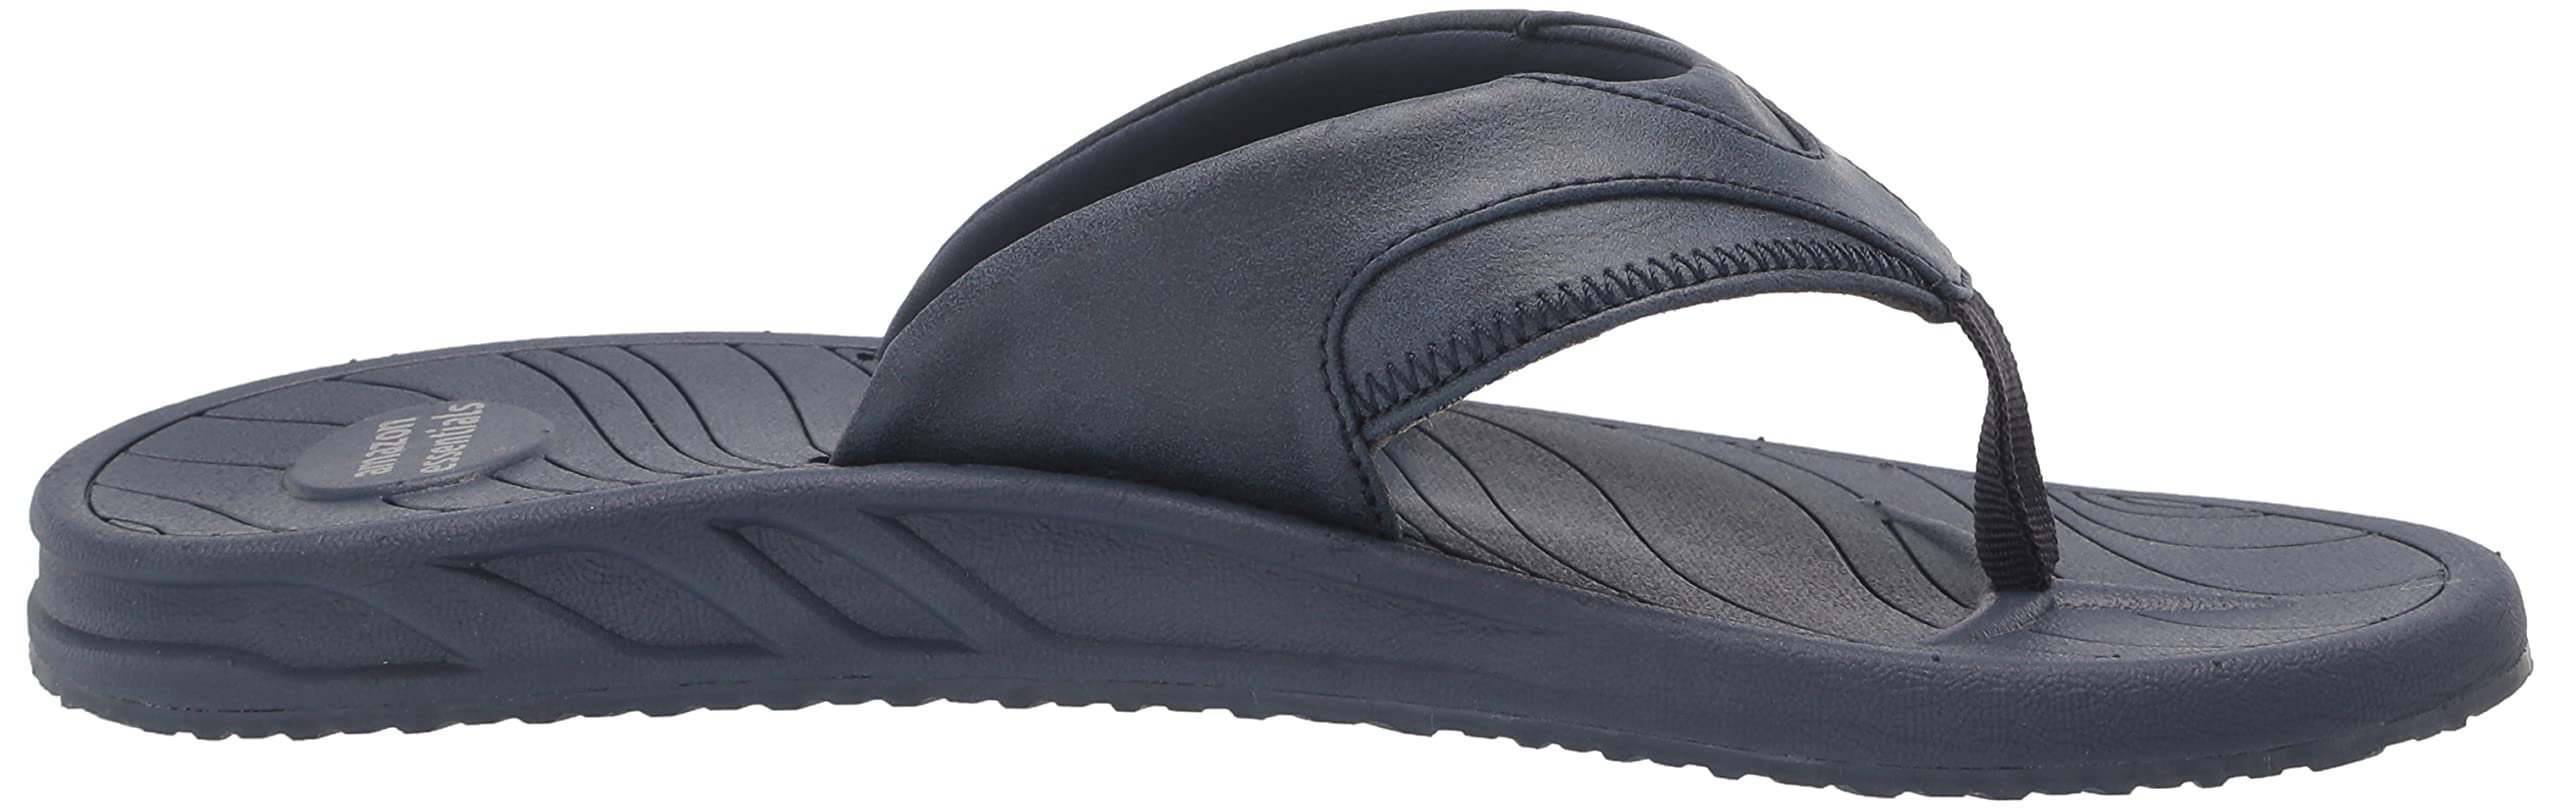 Amazon Essentials Men's Flip Flop Sandal